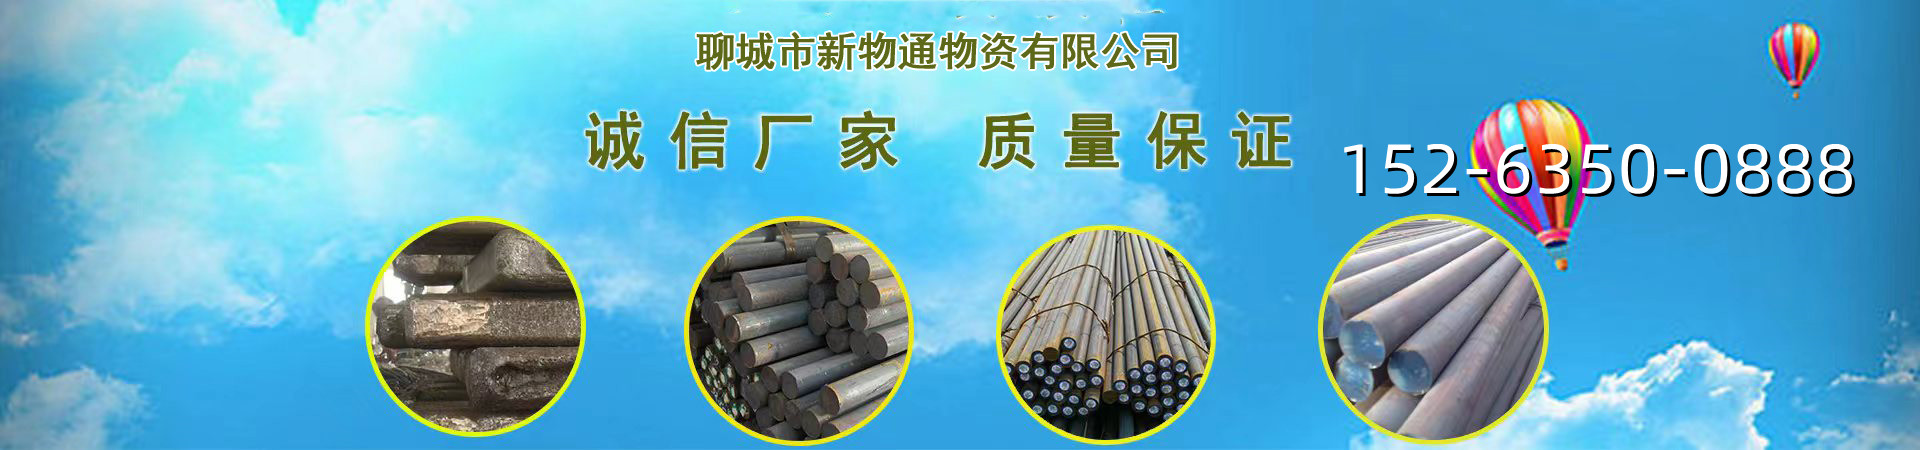 不锈钢管生产厂家、漳州本地不锈钢管生产厂家、漳州、漳州不锈钢管生产厂家